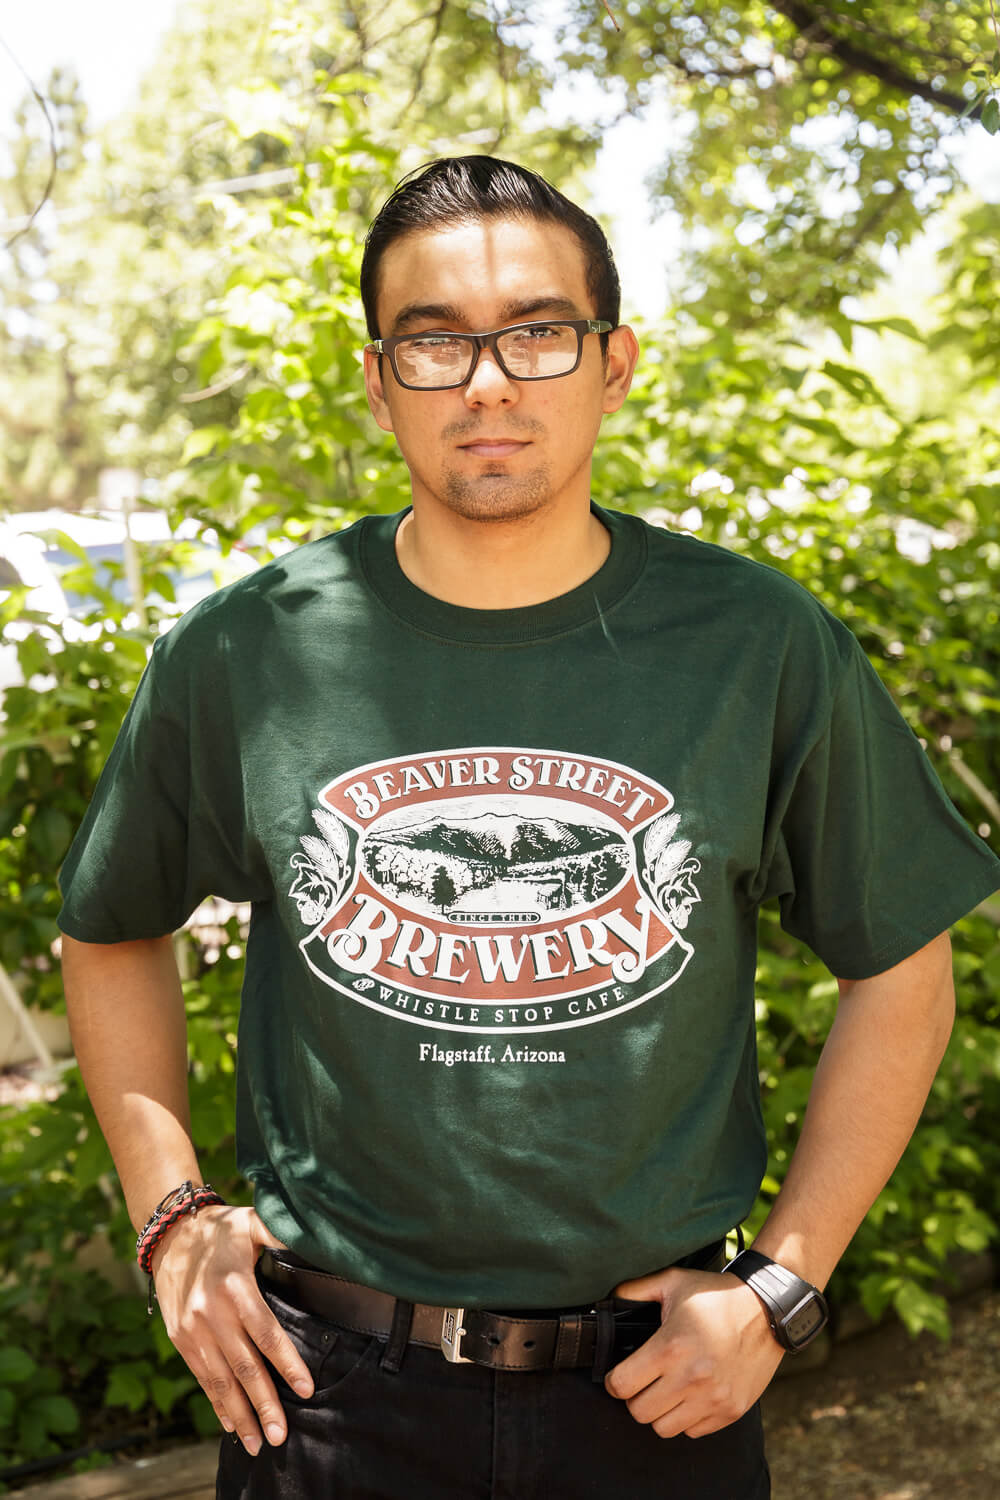 Green Beaver street T-shirt